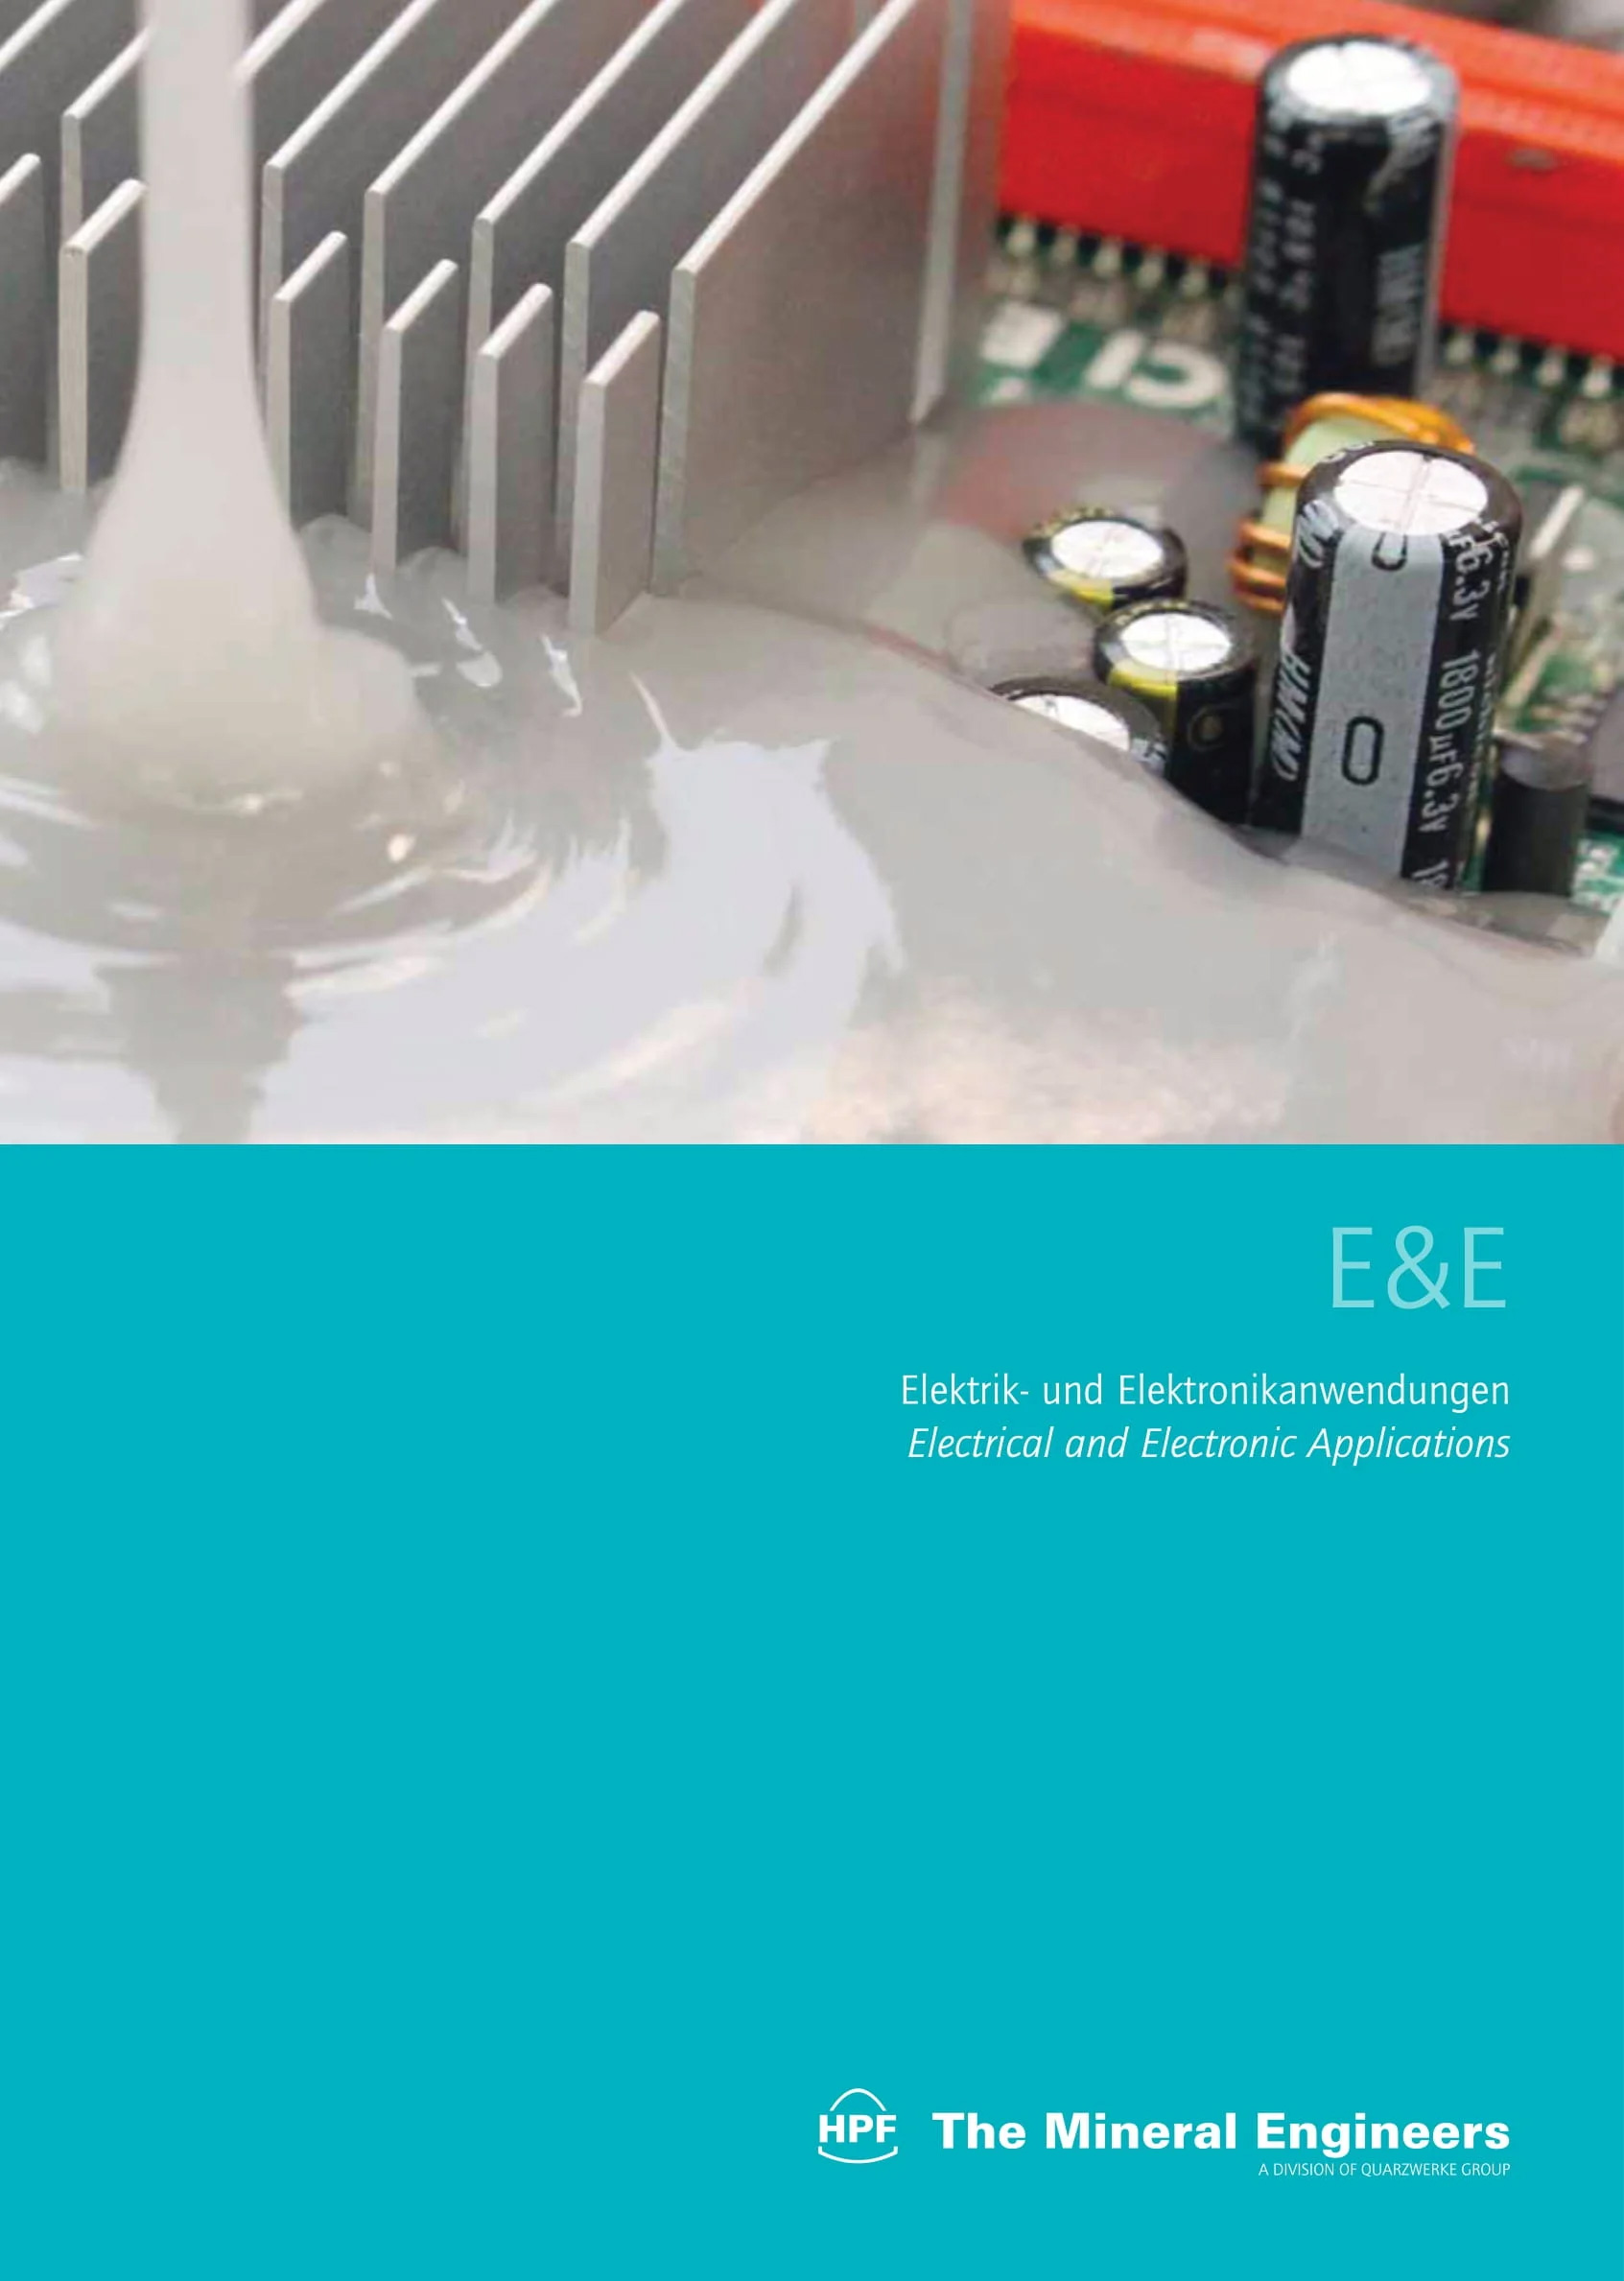 E&E: Elektro & Elektronikanwendungen